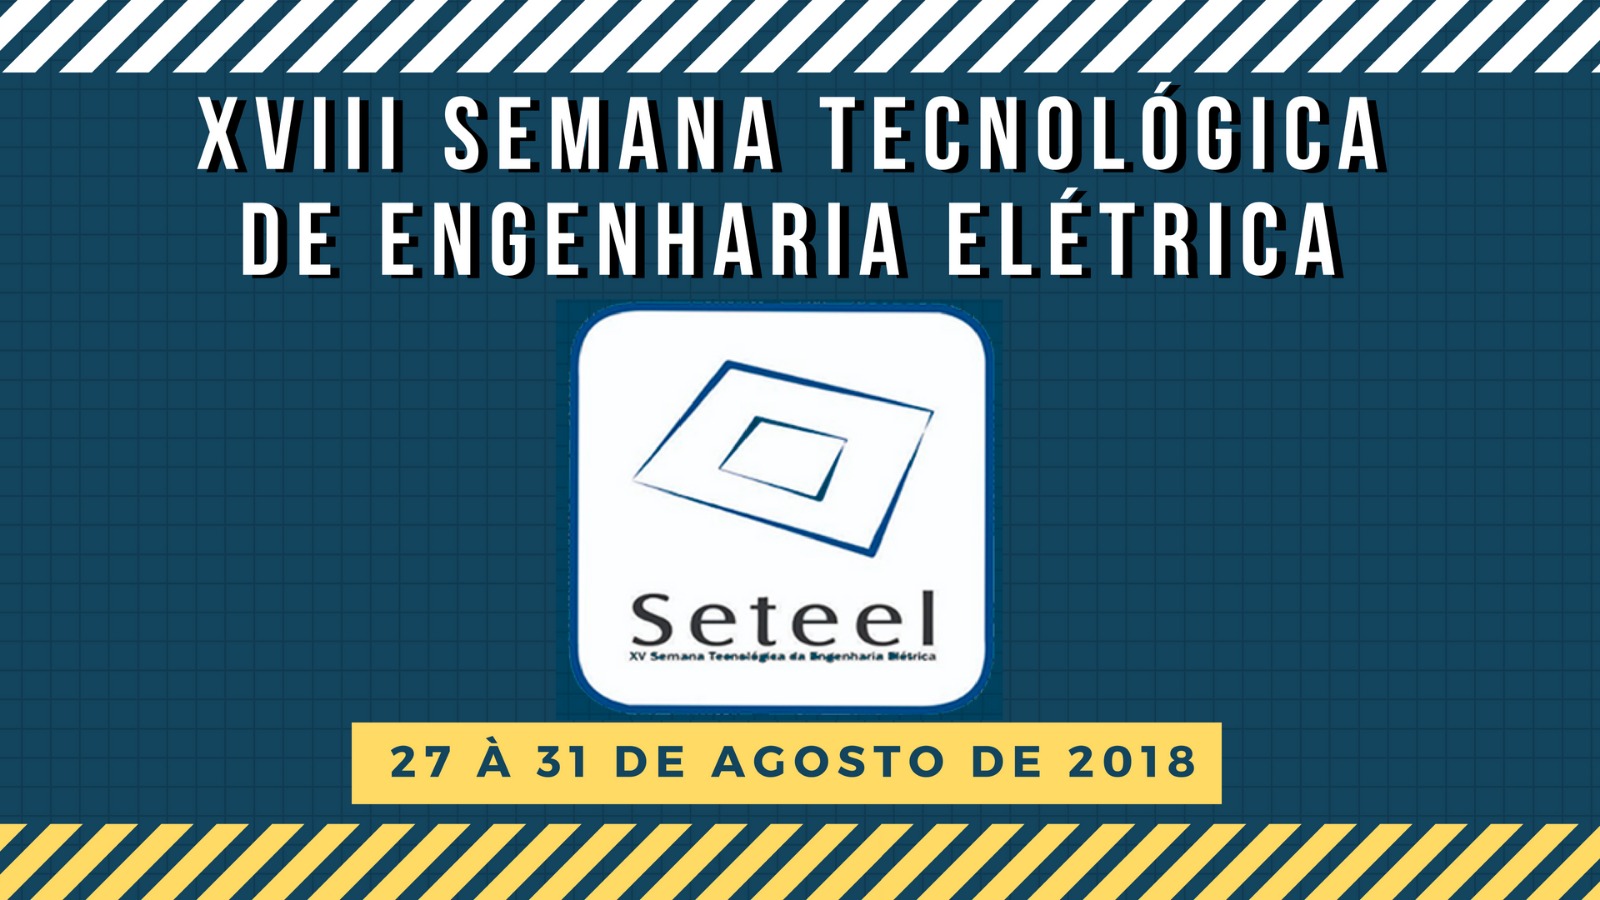 Semana da Engenharia Elétrica - 27 a 31 de agosto 2018